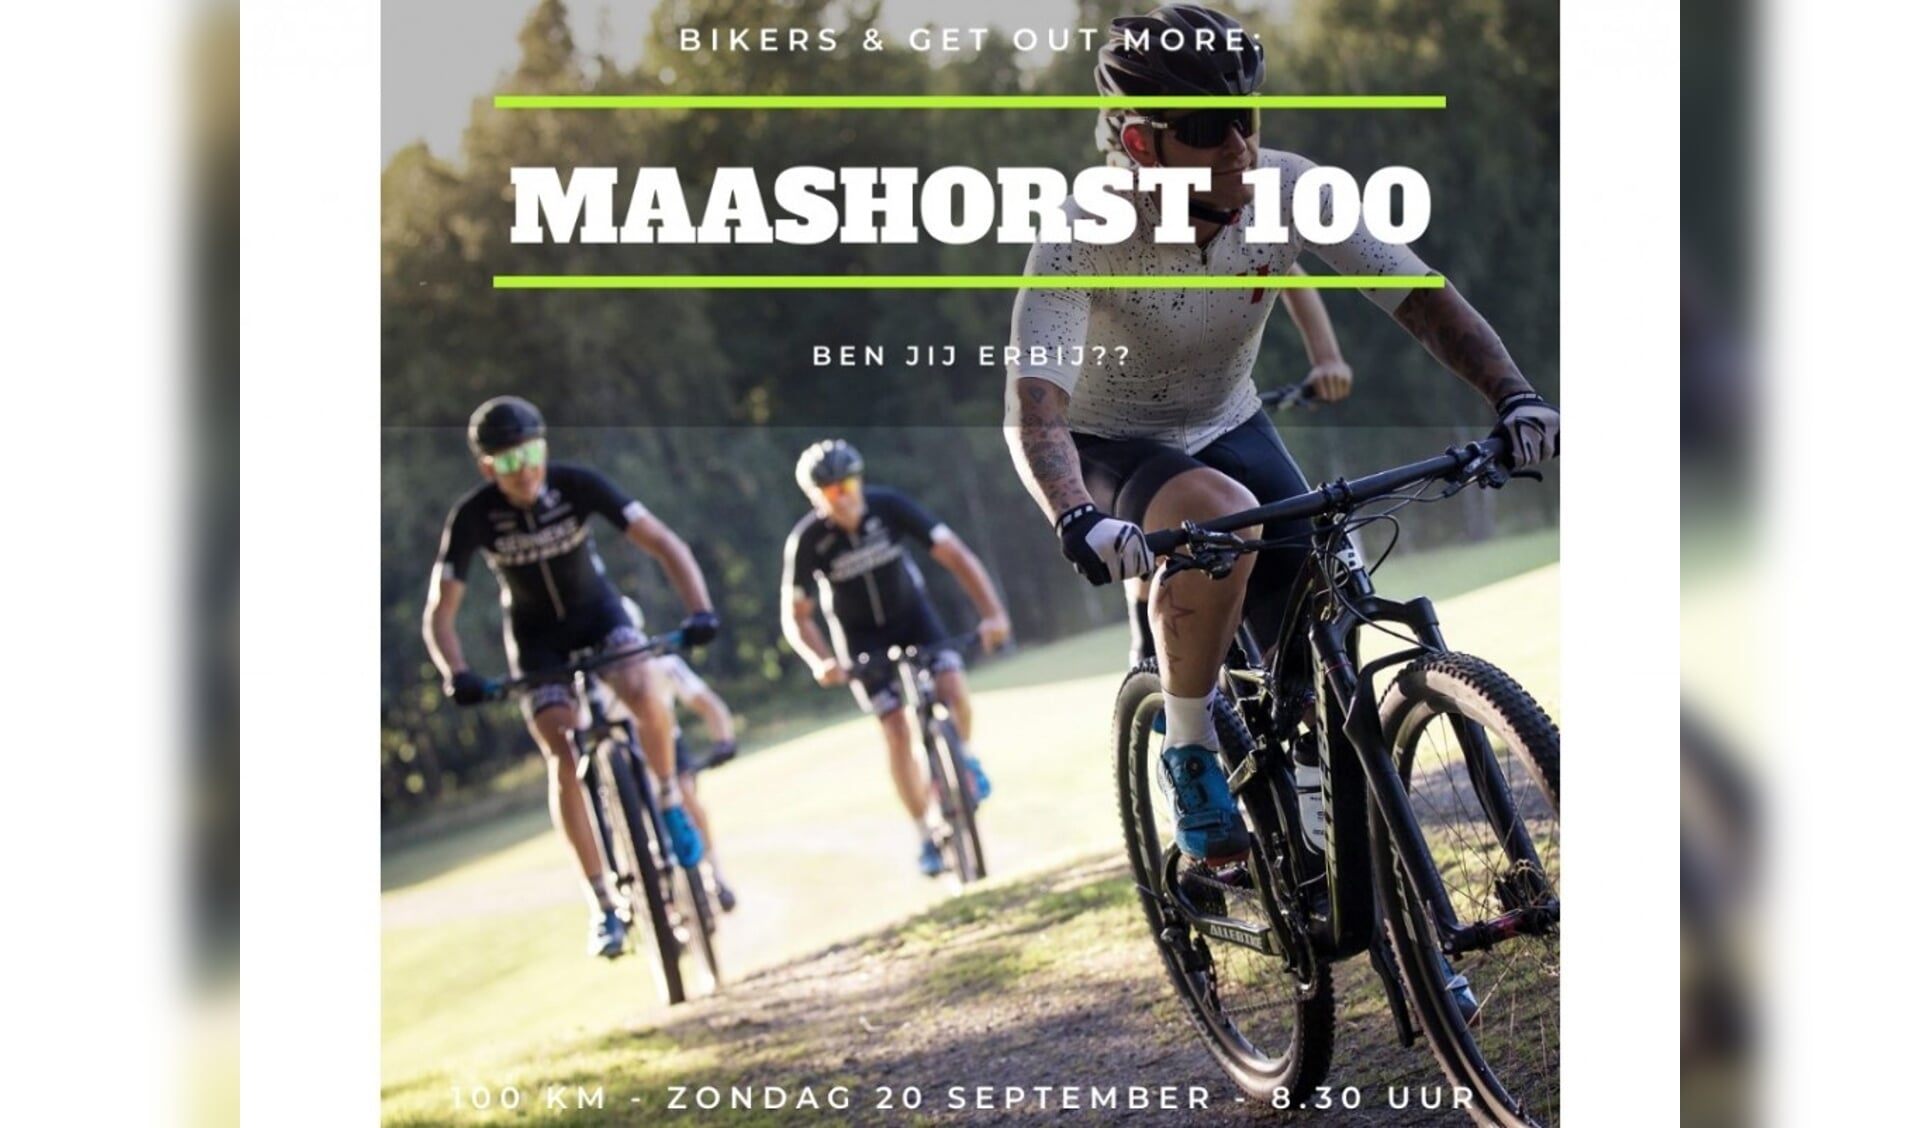 Bikers & Get Out More organiseren de Maashorst 100 Mountainbiketocht